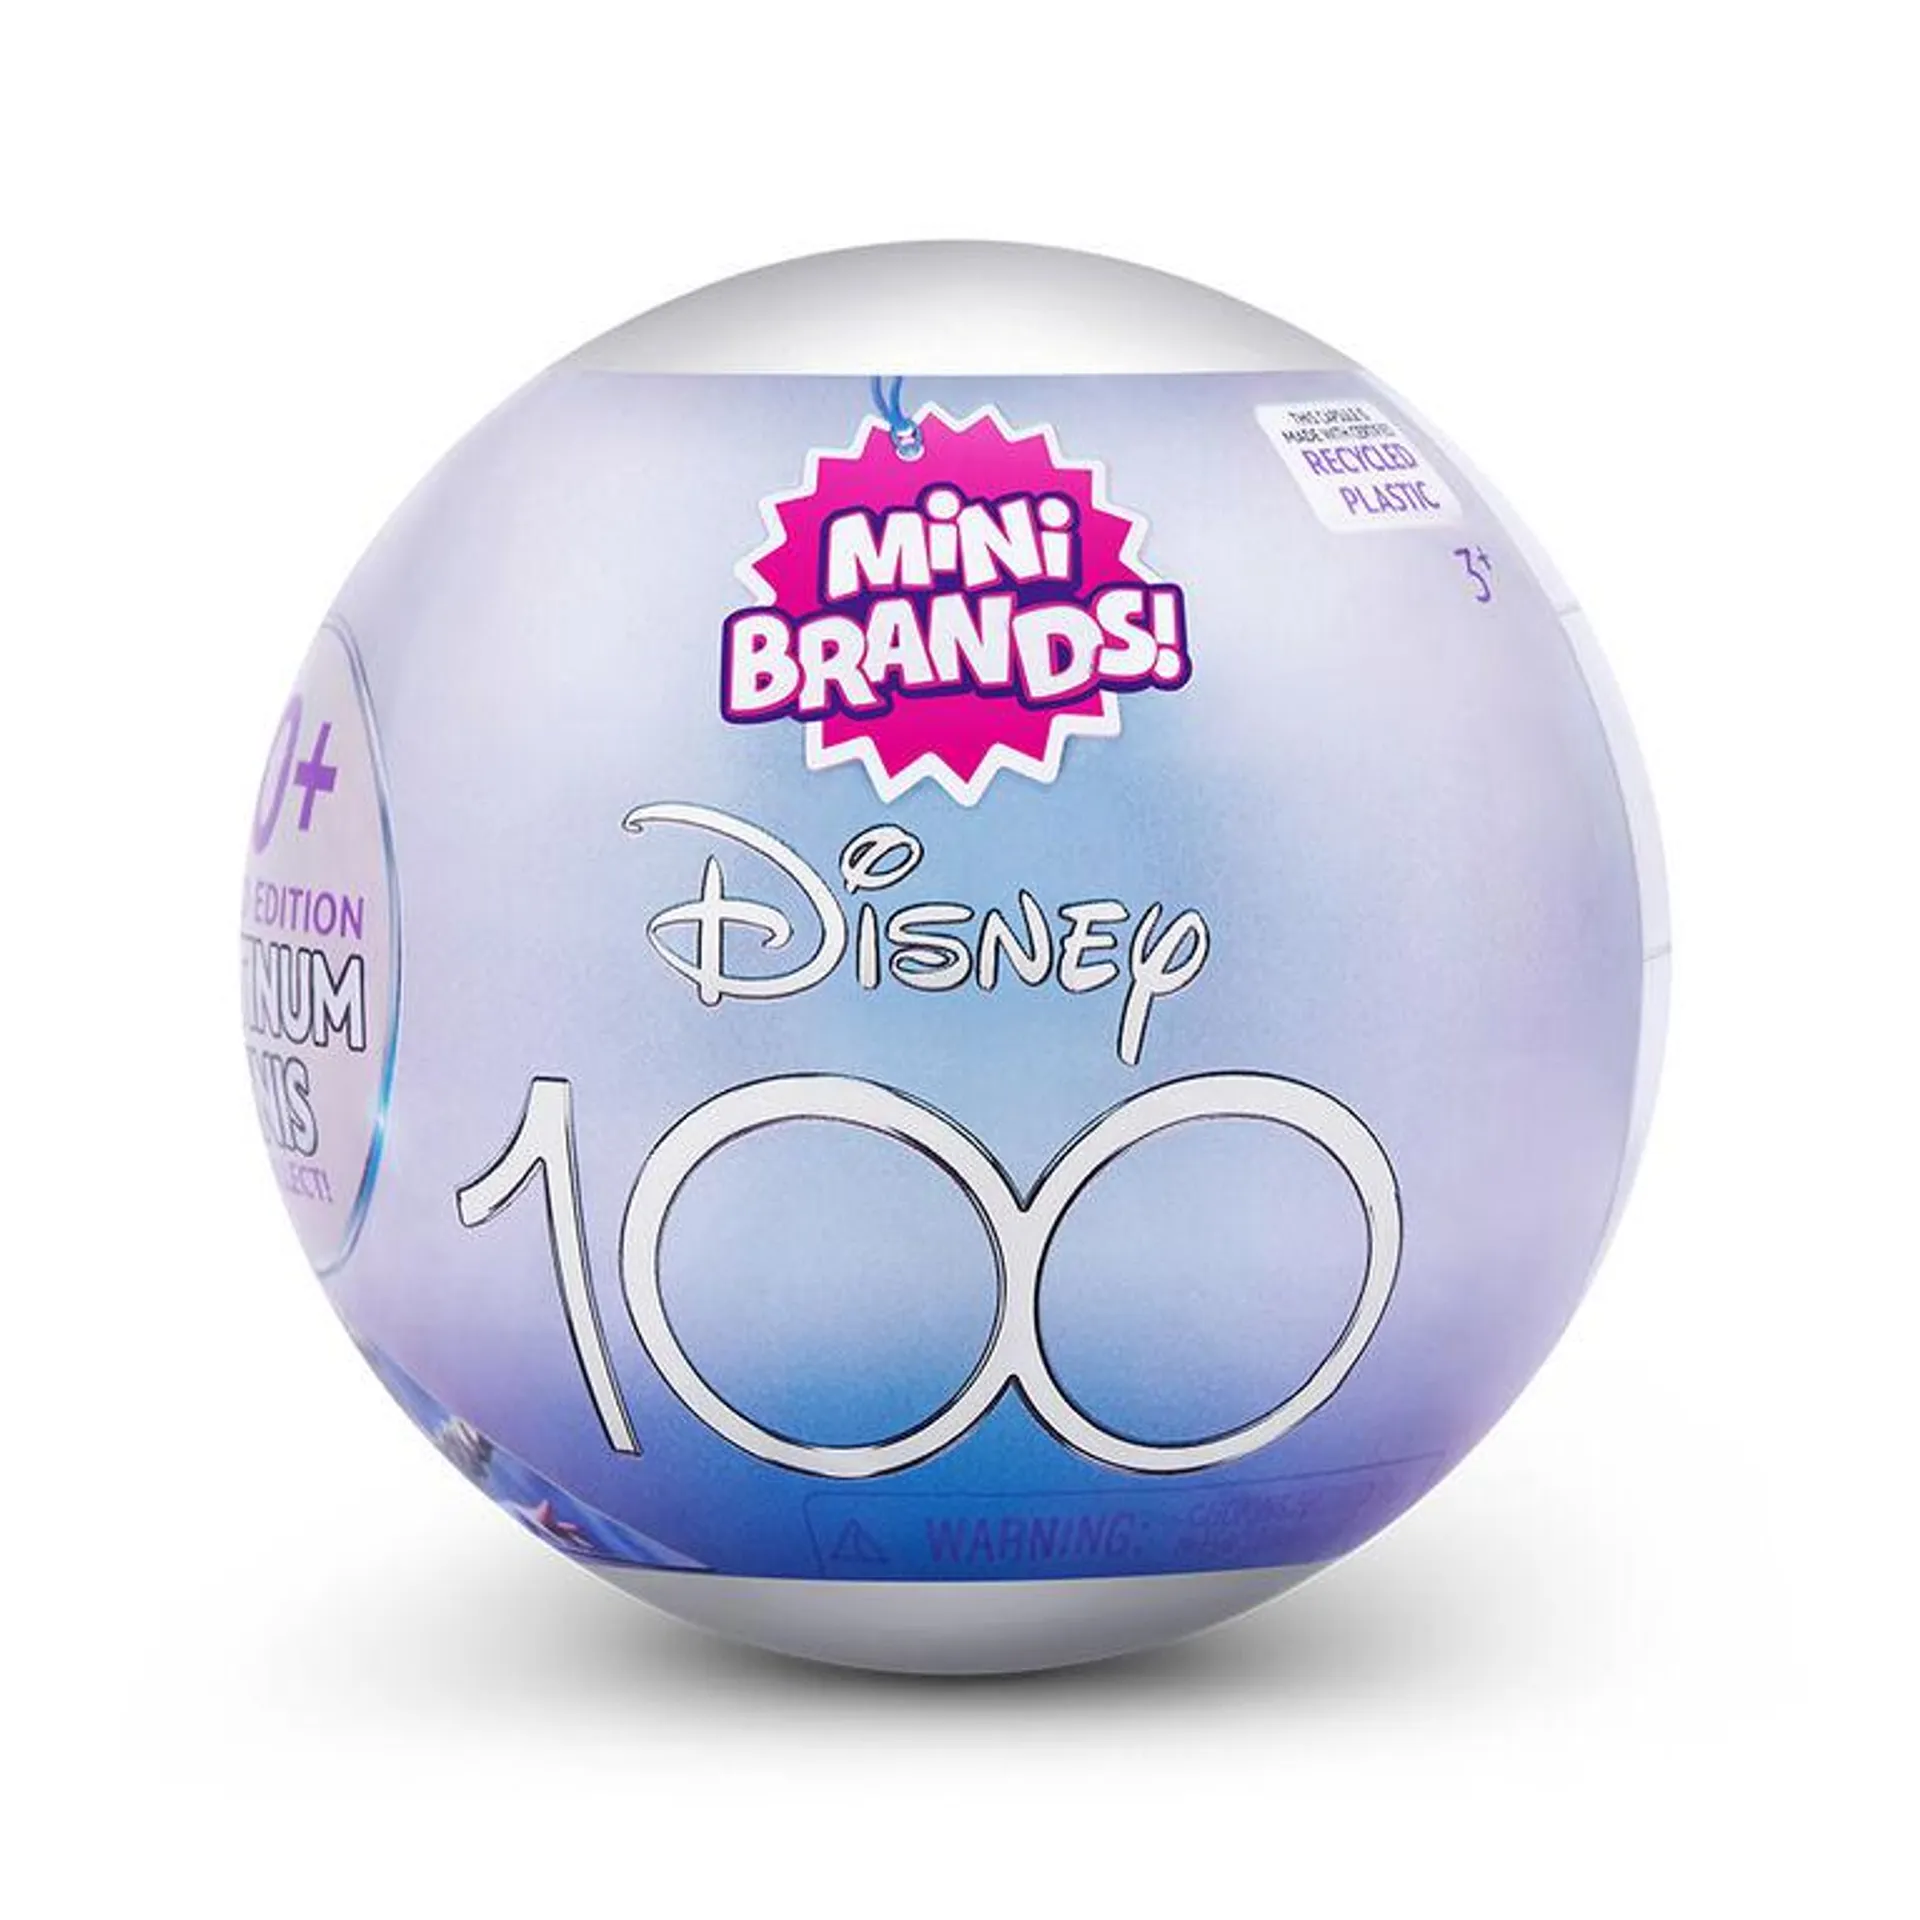 Disney 100 Mini Brands Limited Edition Platinum Capsule by ZURU